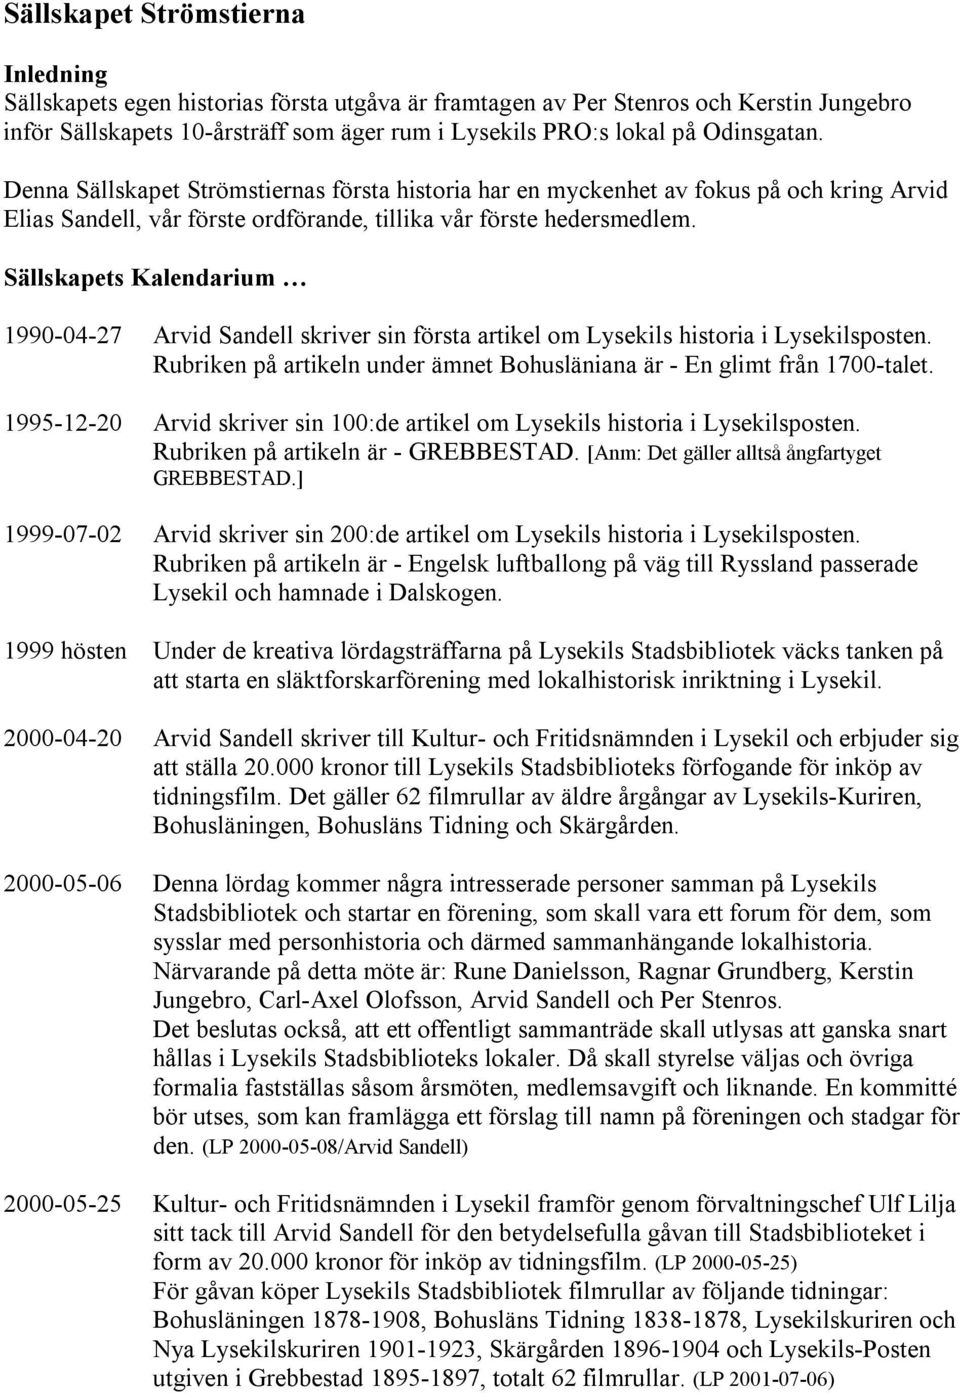 Sällskapets Kalendarium 1990-04-27 Arvid Sandell skriver sin första artikel om Lysekils historia i Lysekilsposten. Rubriken på artikeln under ämnet Bohusläniana är - En glimt från 1700-talet.